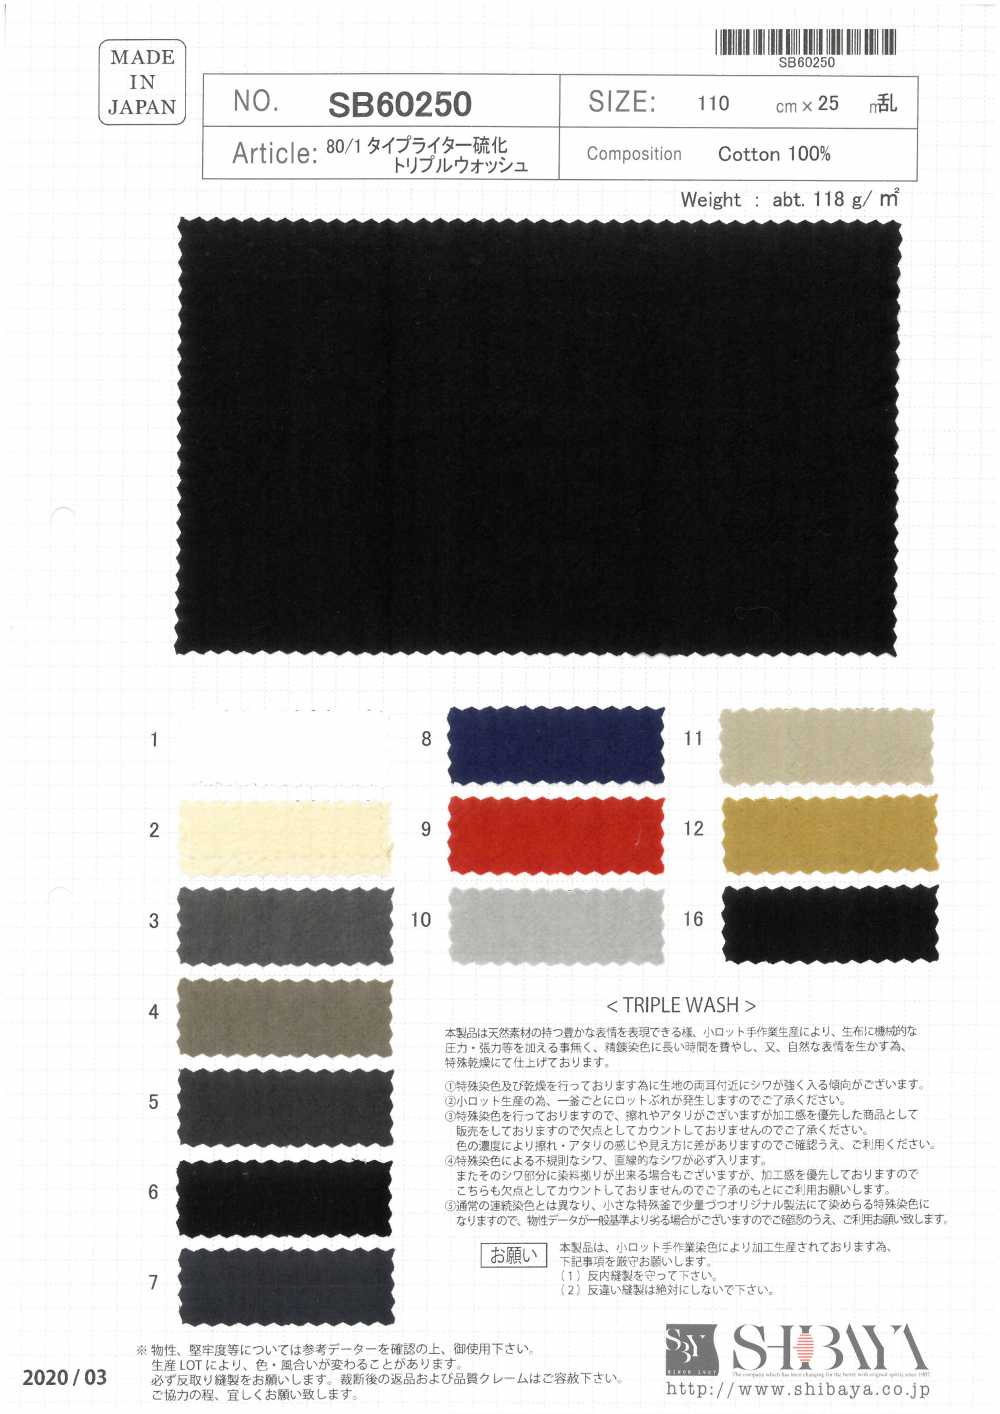 SB60250 80/1 Tejido De Máquina De Escribir Con Sulfuro De Triple Lavado[Fabrica Textil] SHIBAYA